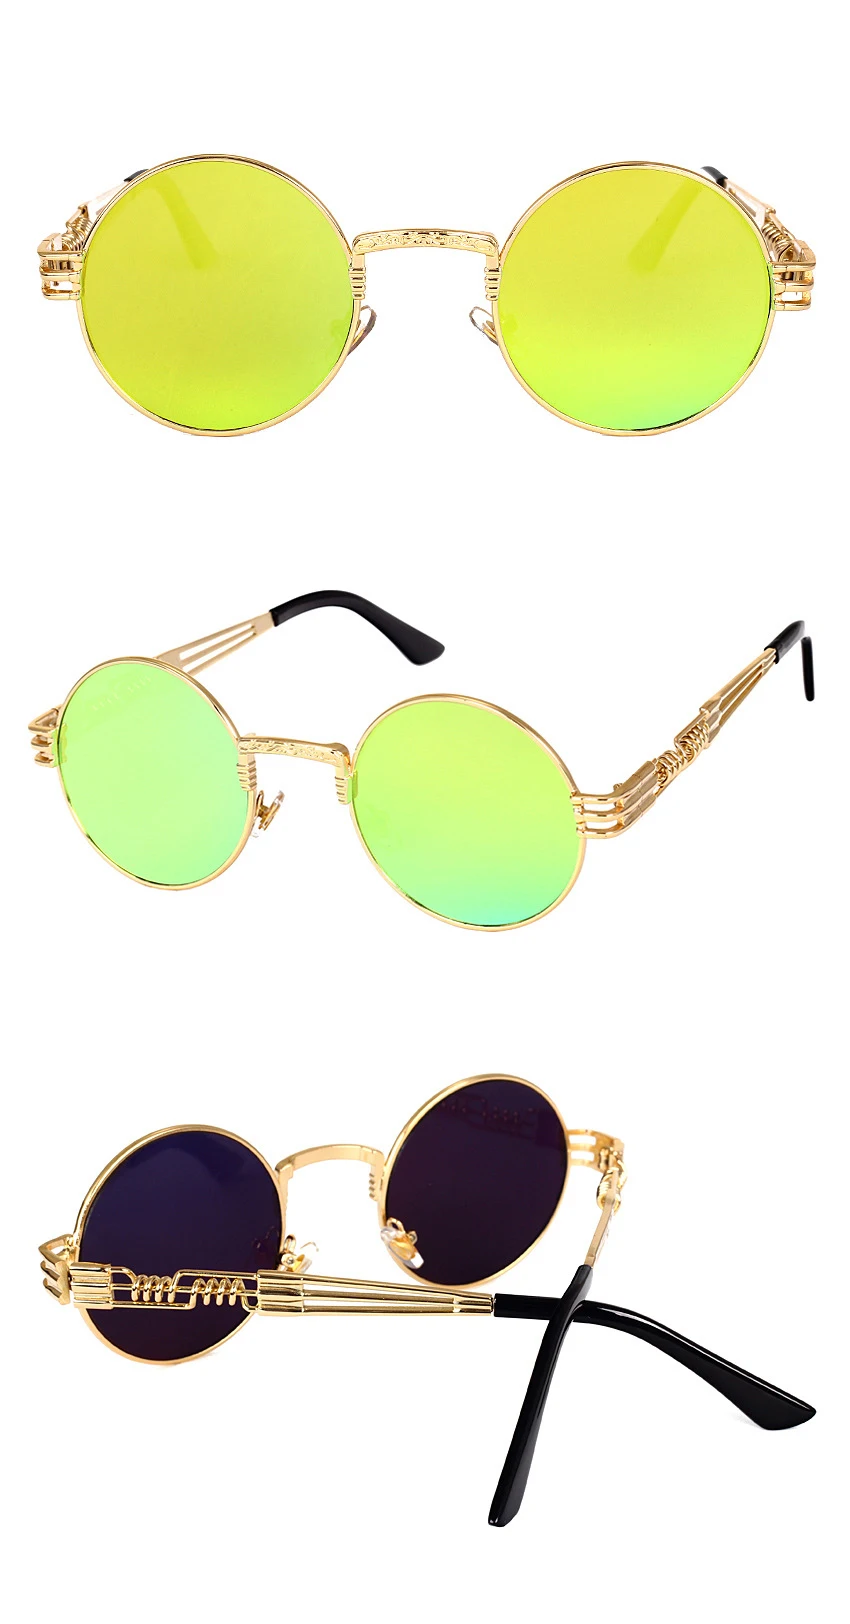 Ретро круглые готические зеркальные очки в стиле стимпанк Солнцезащитные очки мужские и женские металлические солнцезащитные очки мужские Oculos De Sol солнцезащитные очки Feminino